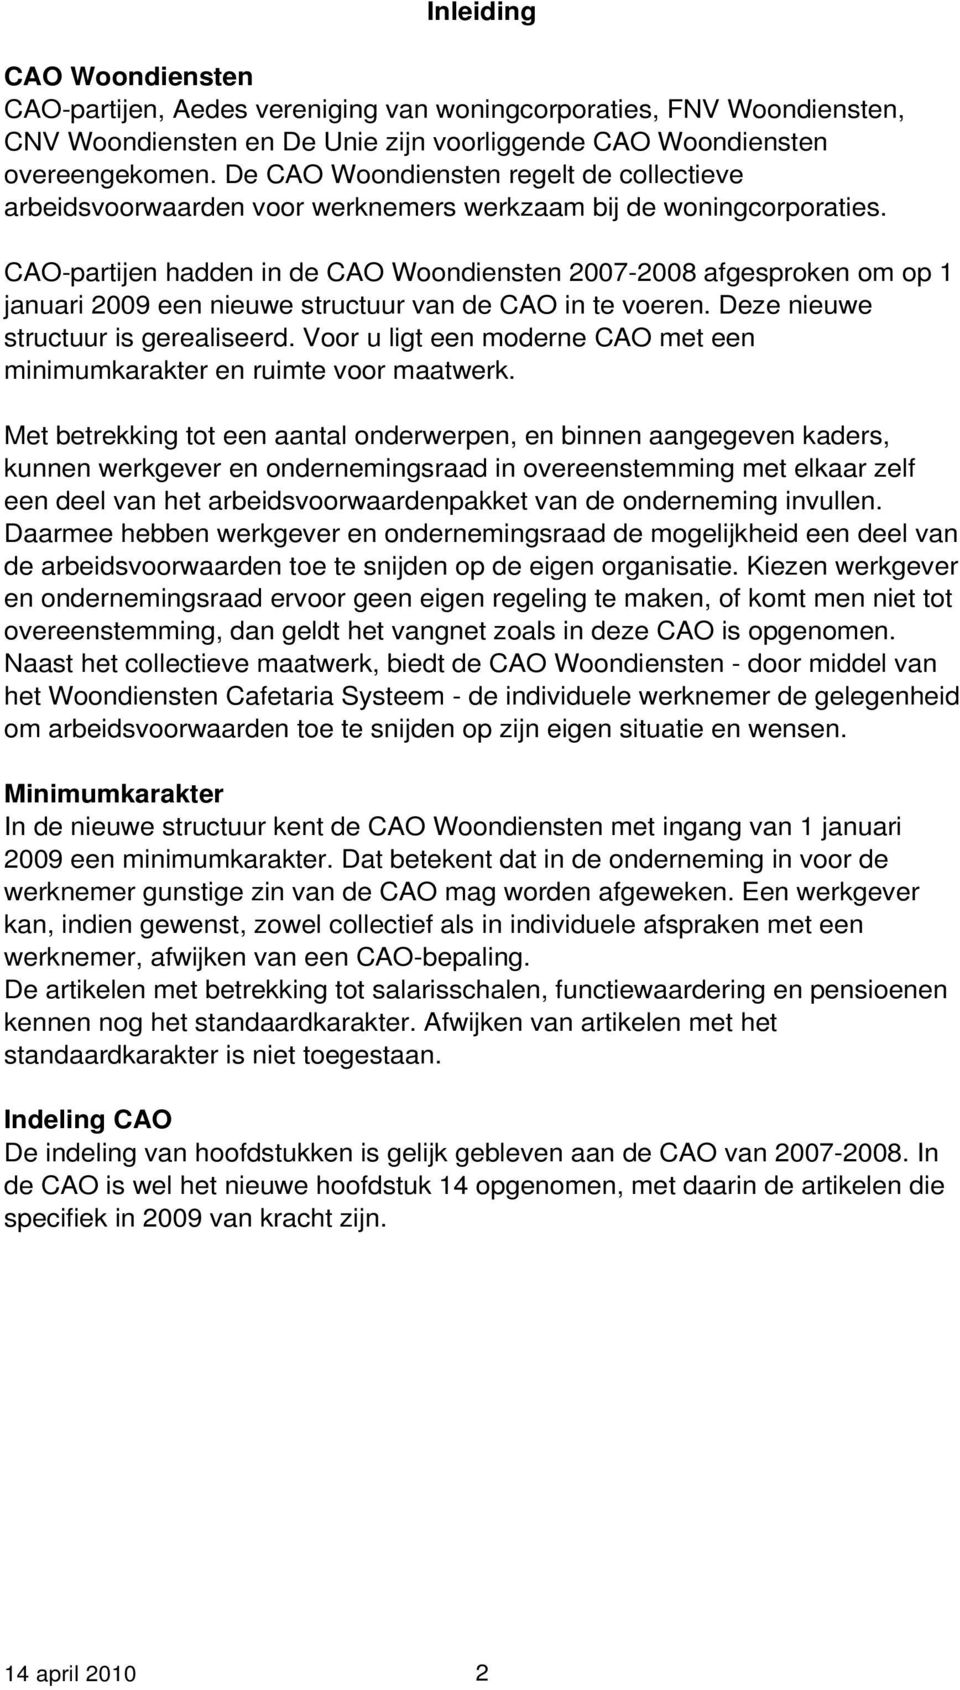 CAO-partijen hadden in de CAO Woondiensten 2007-2008 afgesproken om op 1 januari 2009 een nieuwe structuur van de CAO in te voeren. Deze nieuwe structuur is gerealiseerd.